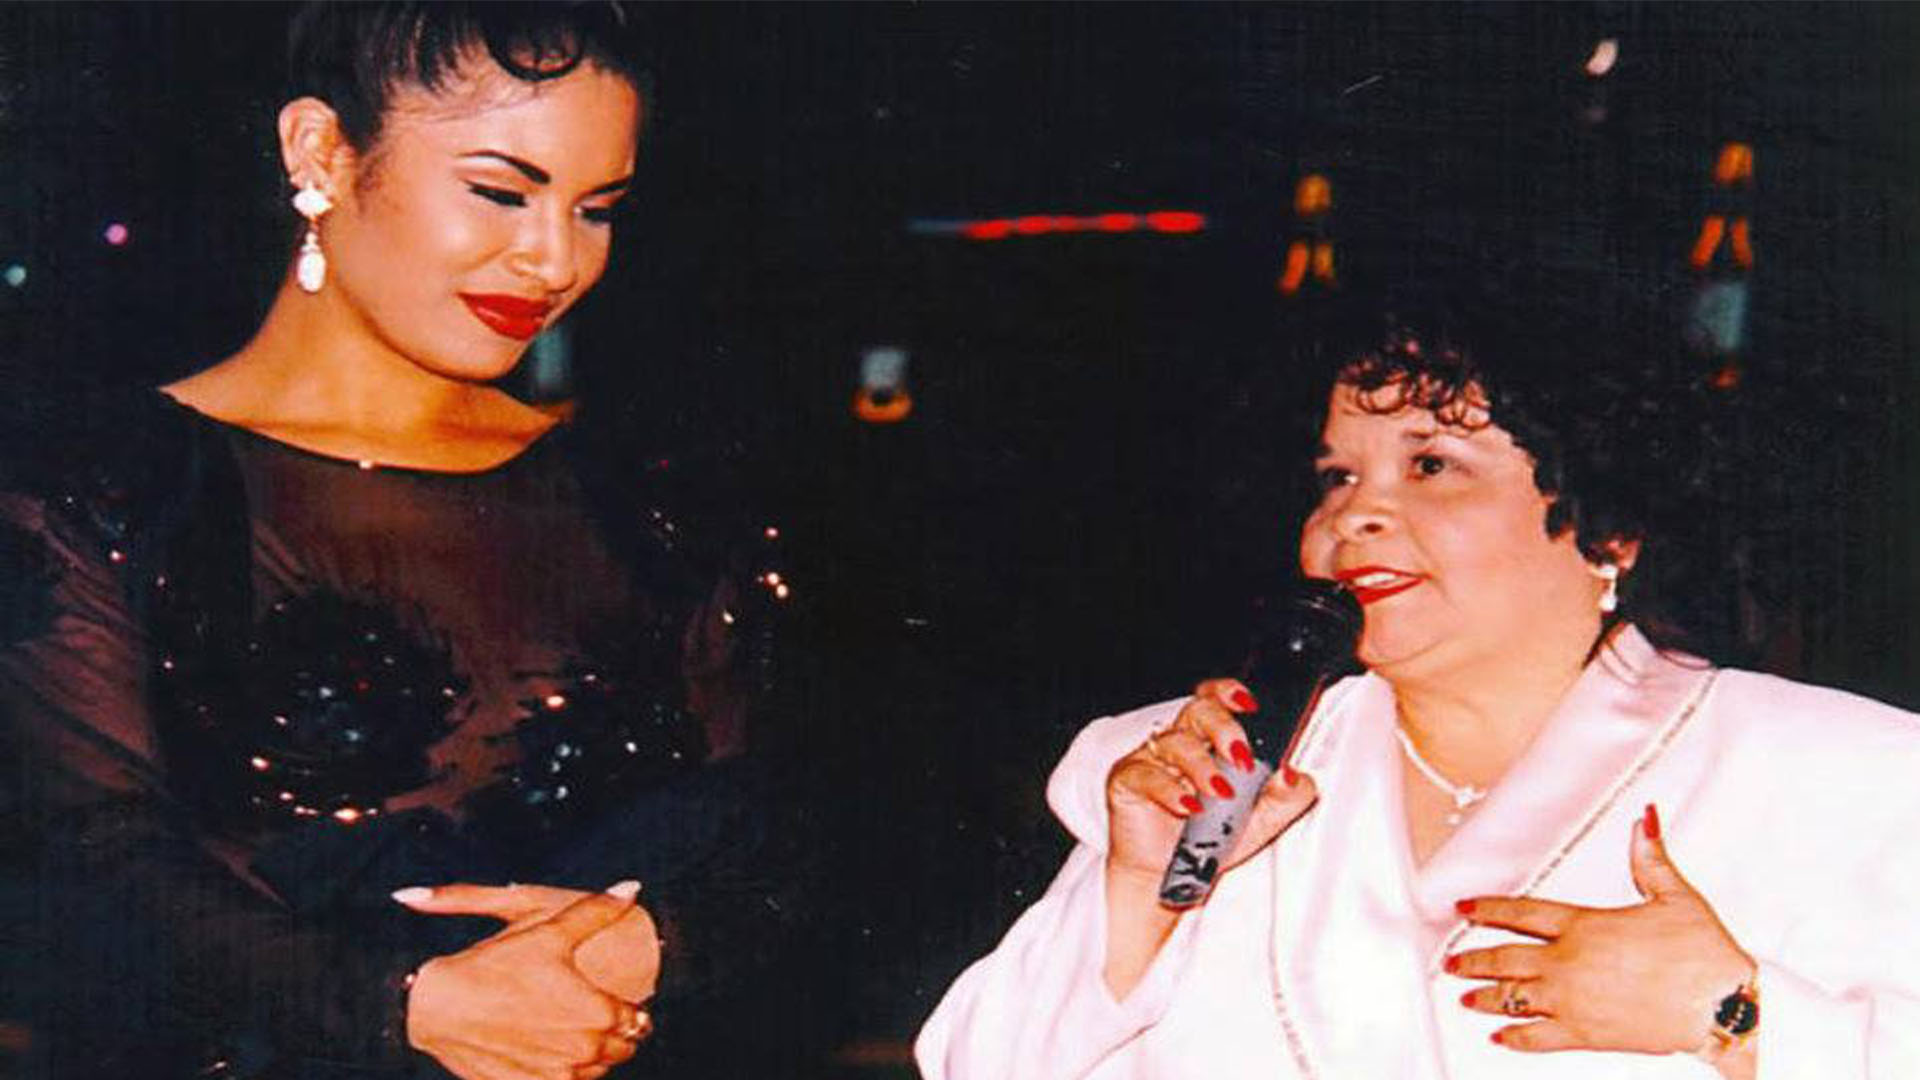 Selena y Yolanda Saldívar llevaban una relación tan cercana que la estrella la había contratado para llevar asuntos de negocios (Foto: Twitter @raulbrindis)